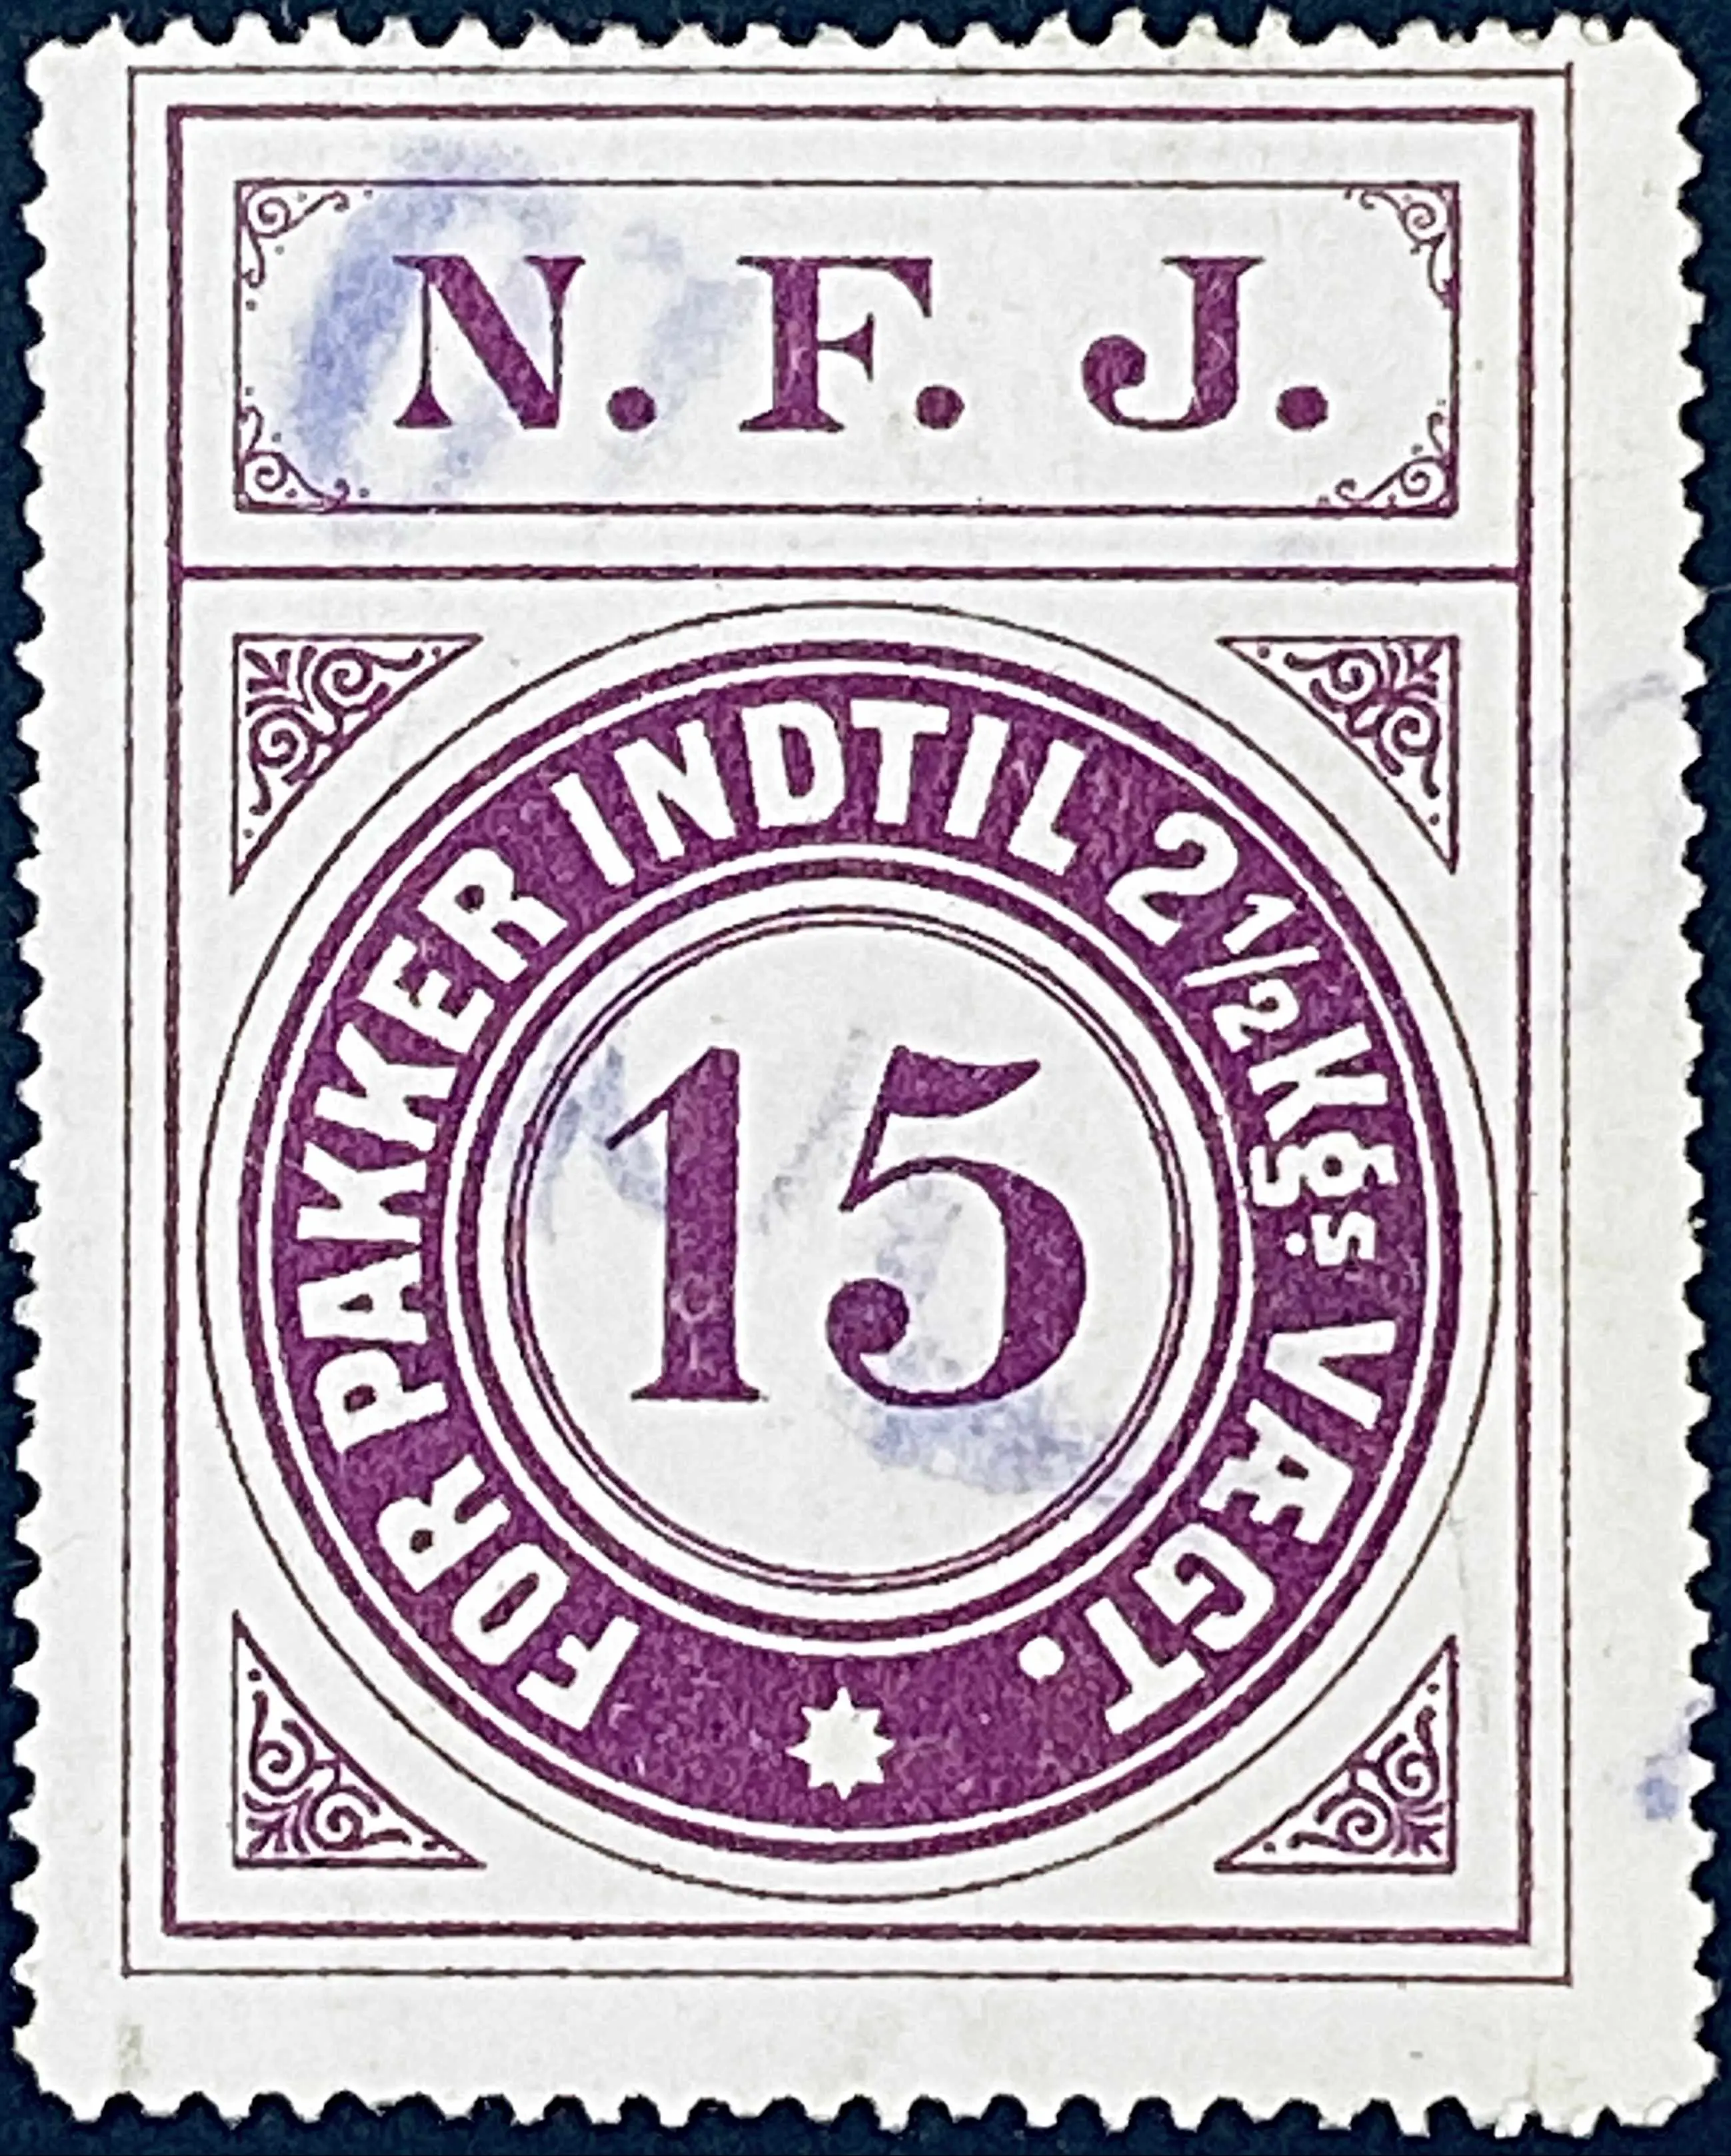 NFJ 6 - 15 Øre - Violet nuance - banemærket er stemplet.